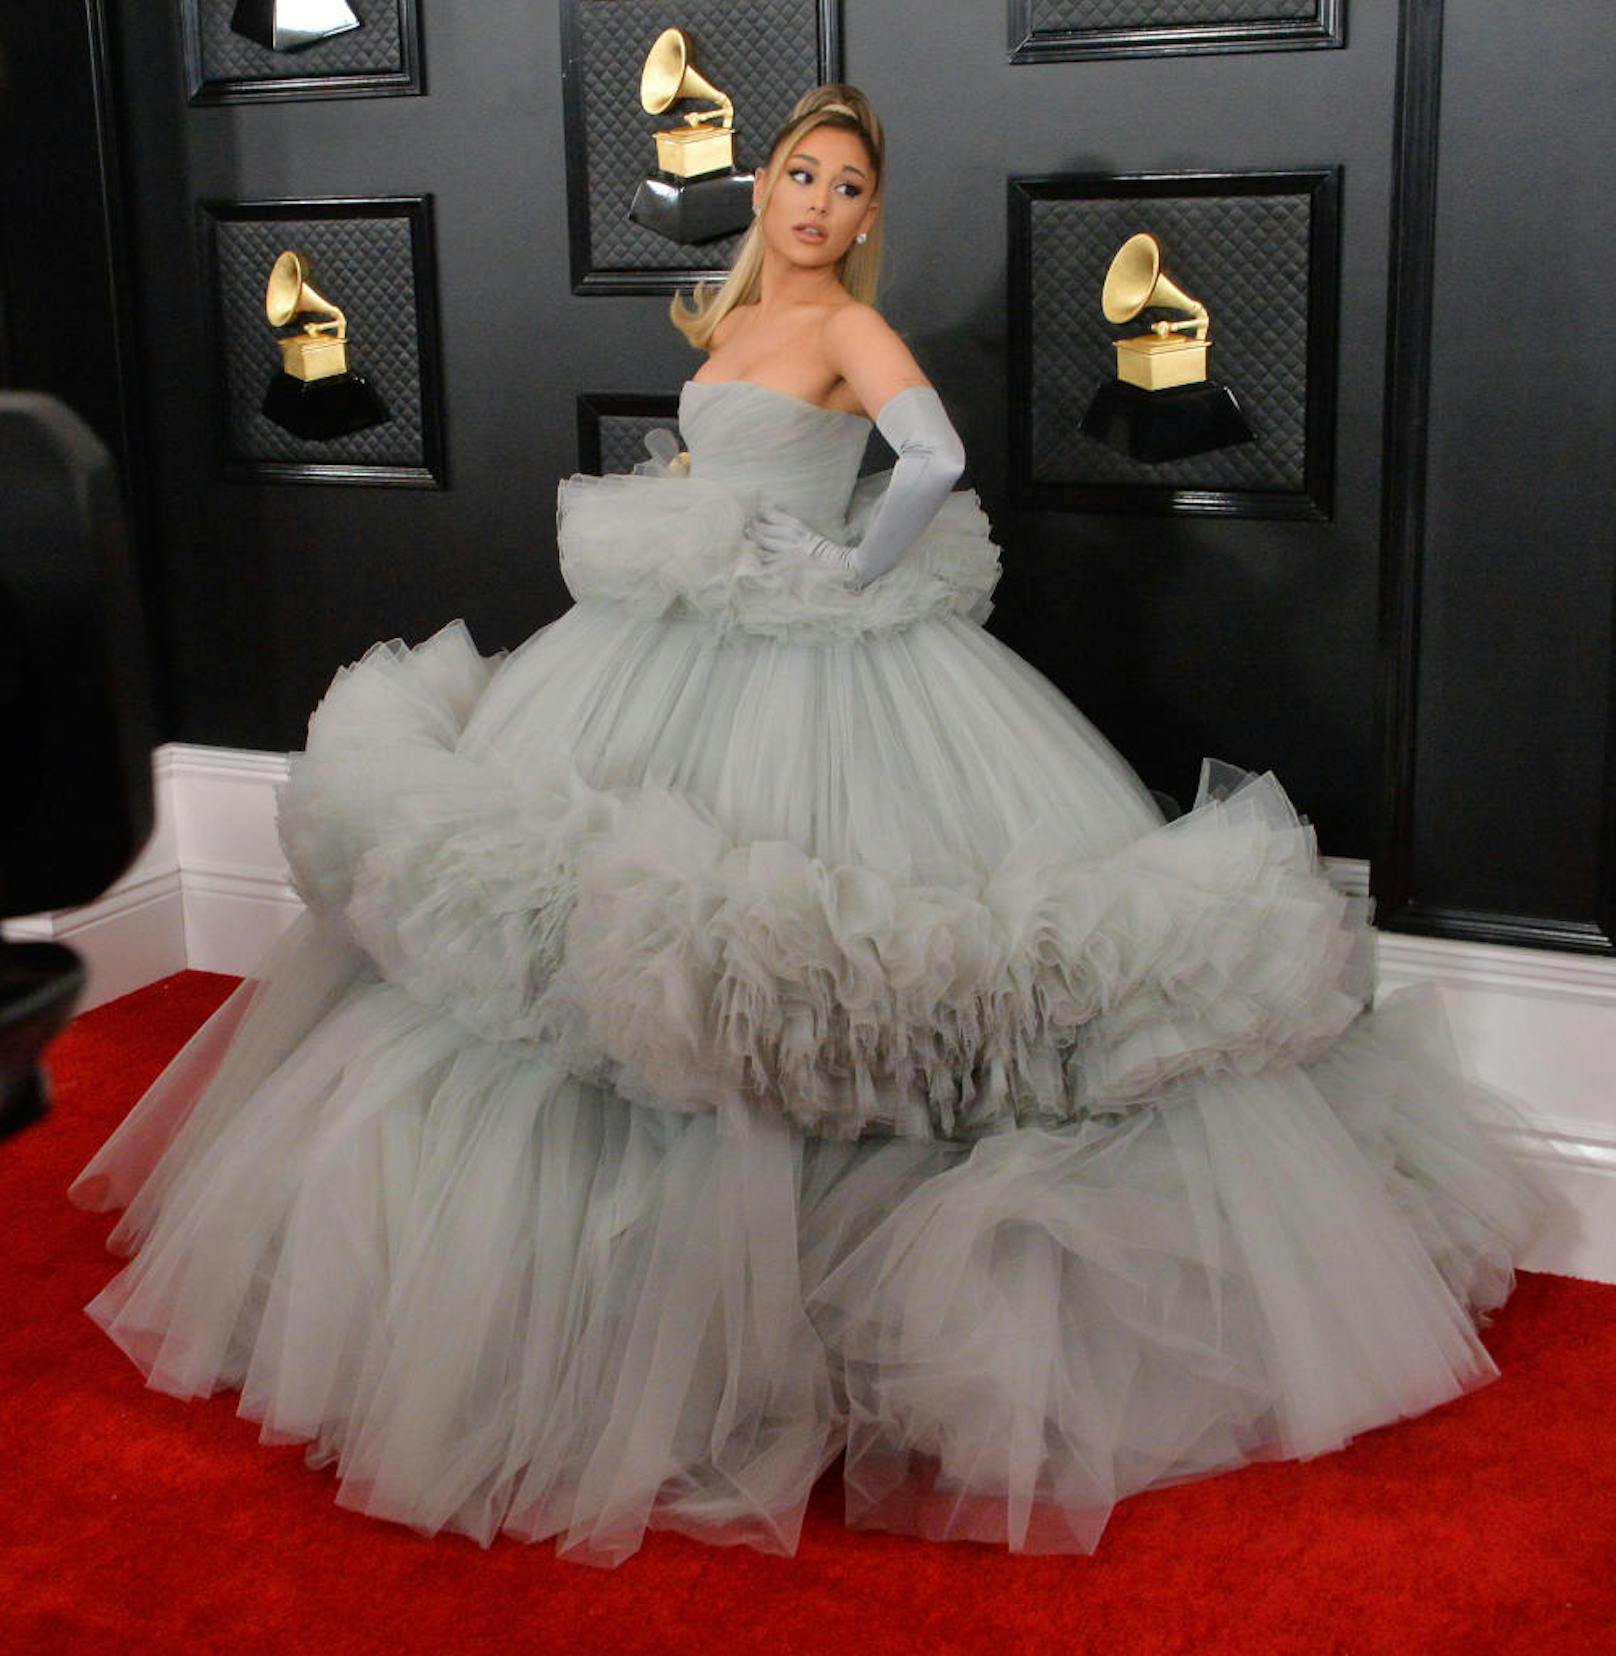 Das Kleid von Ariana Grande wirkt, als würde sie durch den gdeckten Grauton der Tüllexplosion eine gewisse Unschuld und Bodenhaftung verleihen wollen.